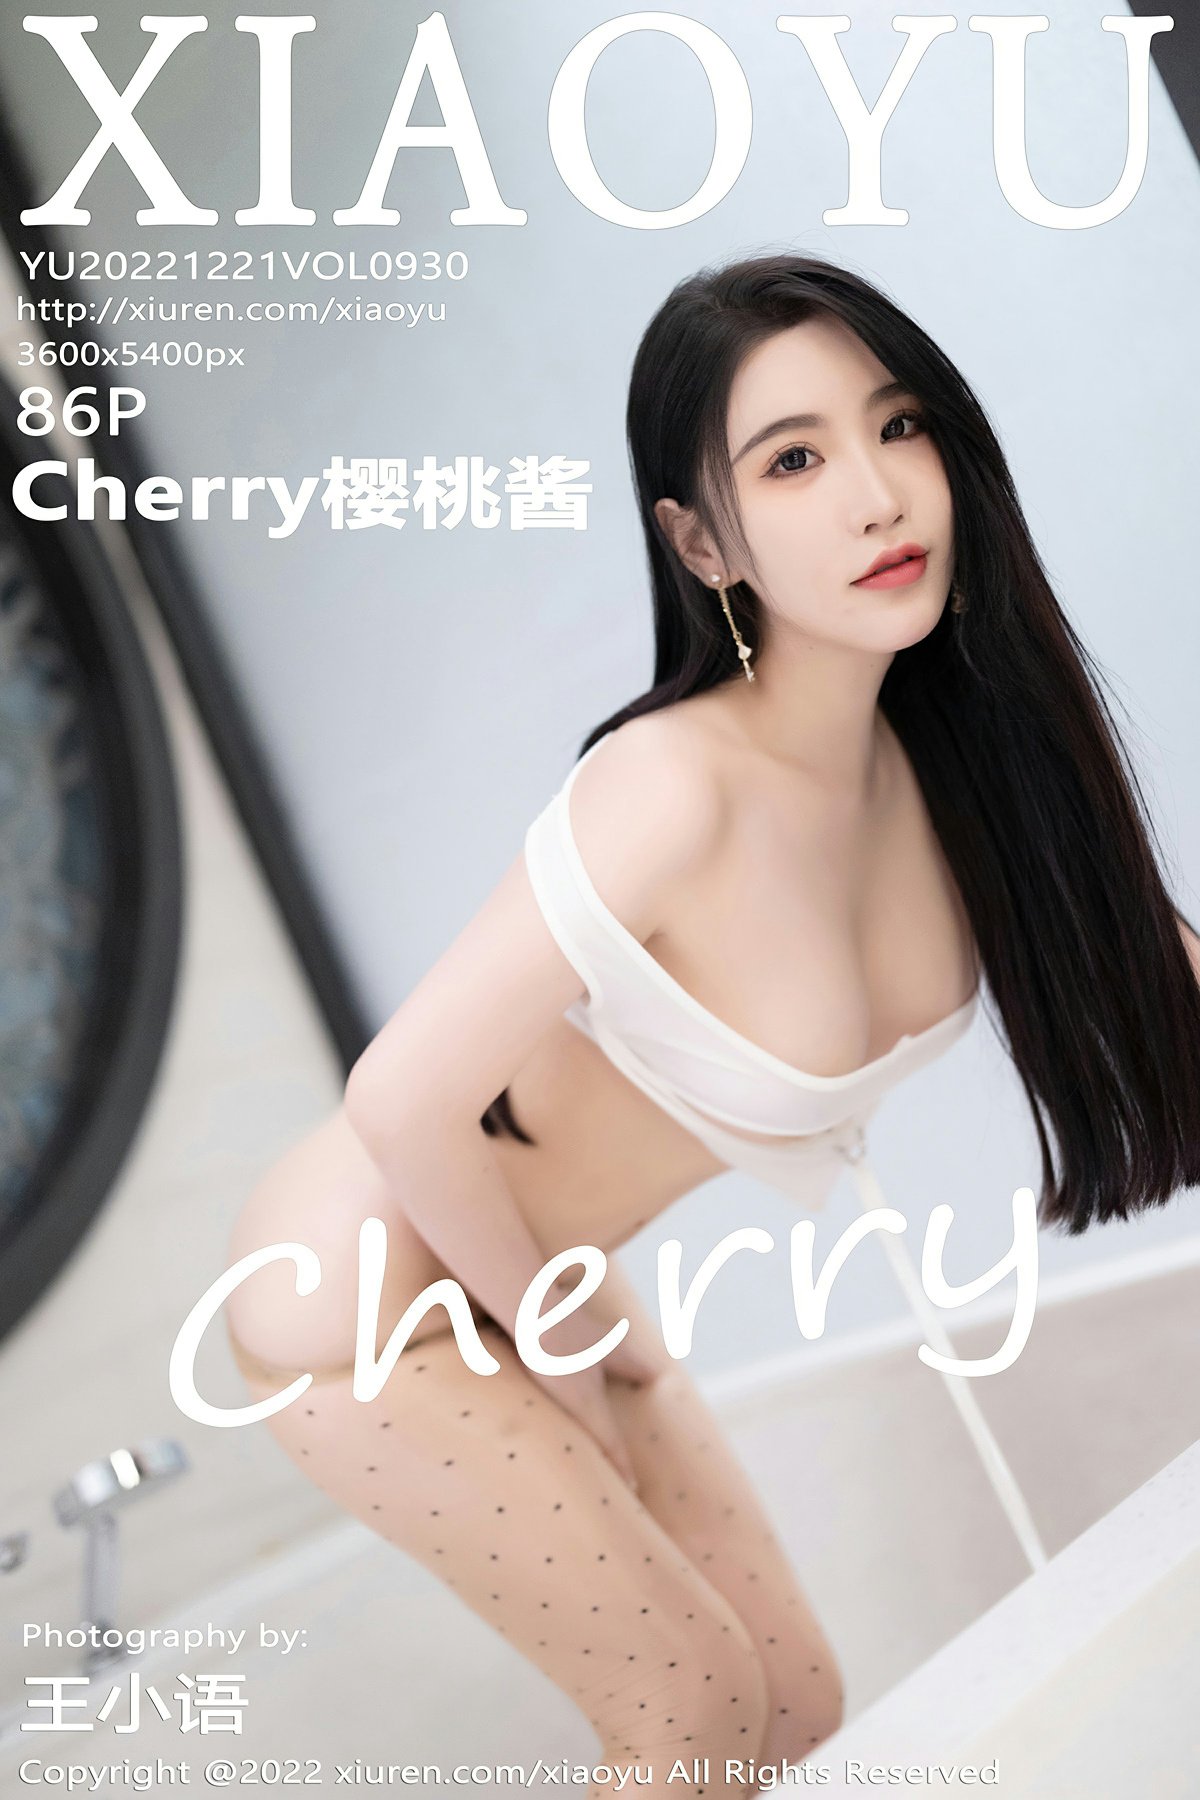 [XIAOYU语画界] 2022.12.21 VOL.930 Cherry樱桃酱 [86+1P]-第1张图片-宅男套图吧